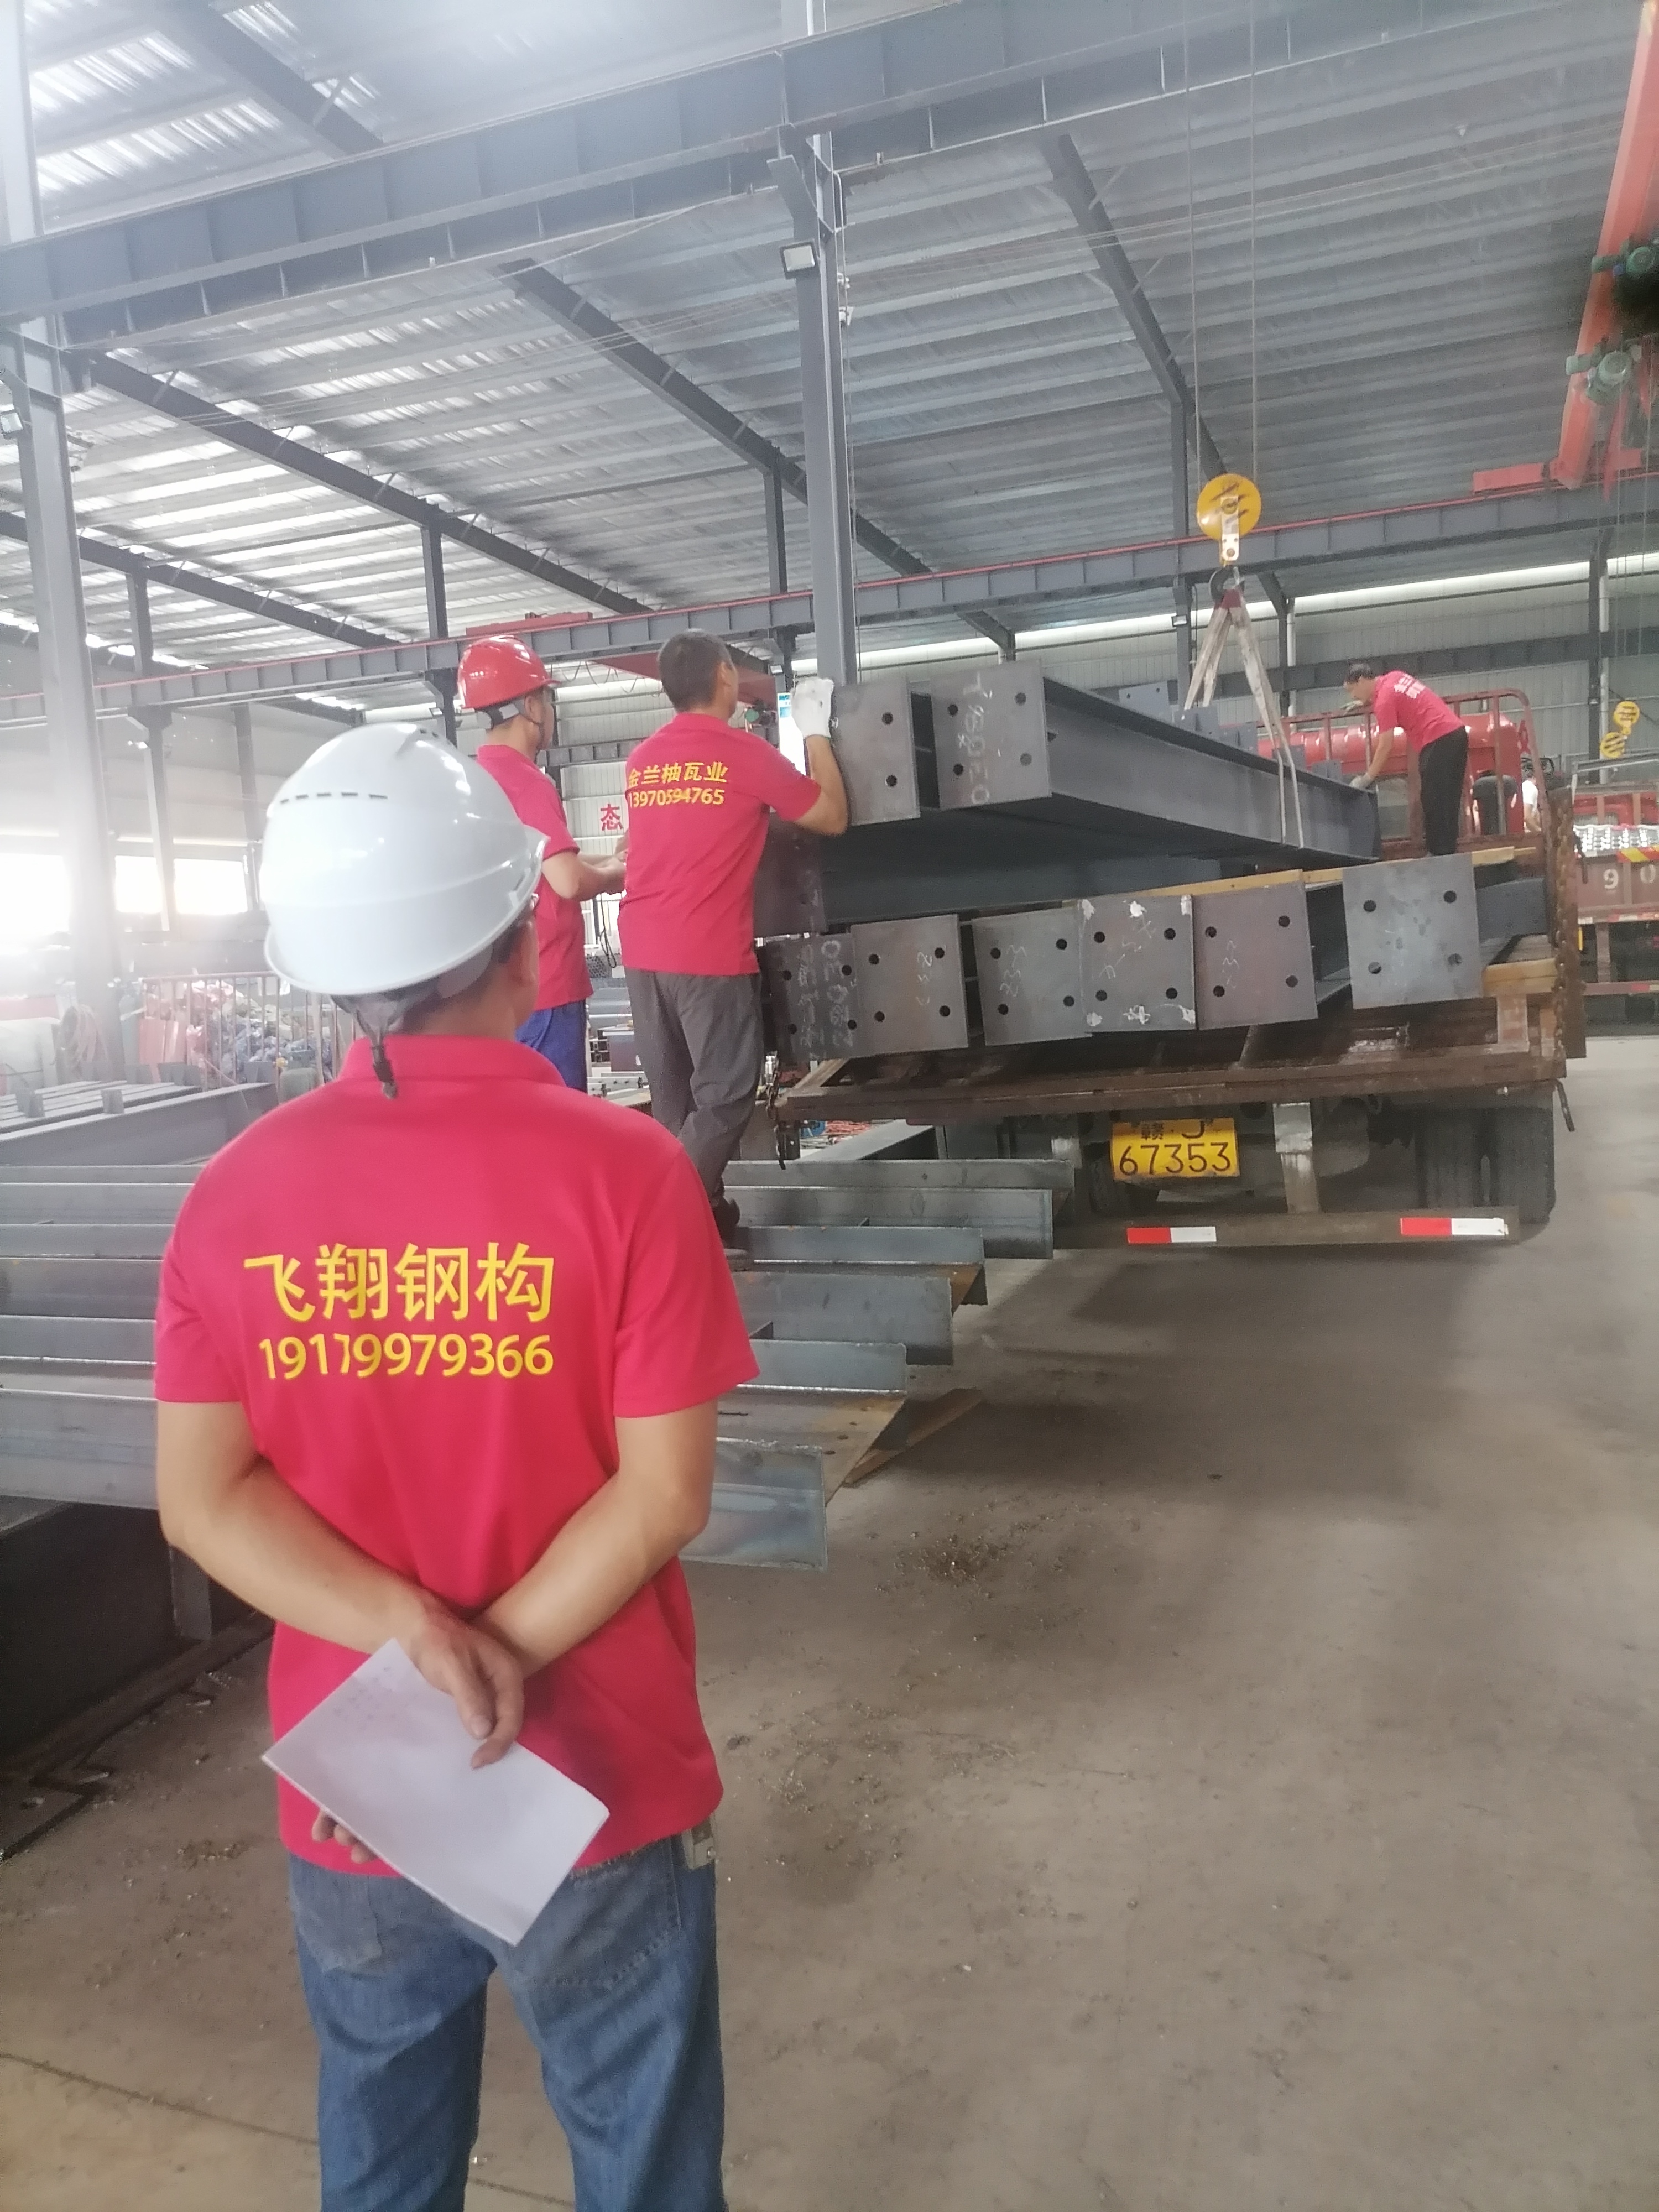 萍乡钢结构 - 萍乡钢结构批发价格、市场报价、厂家供应